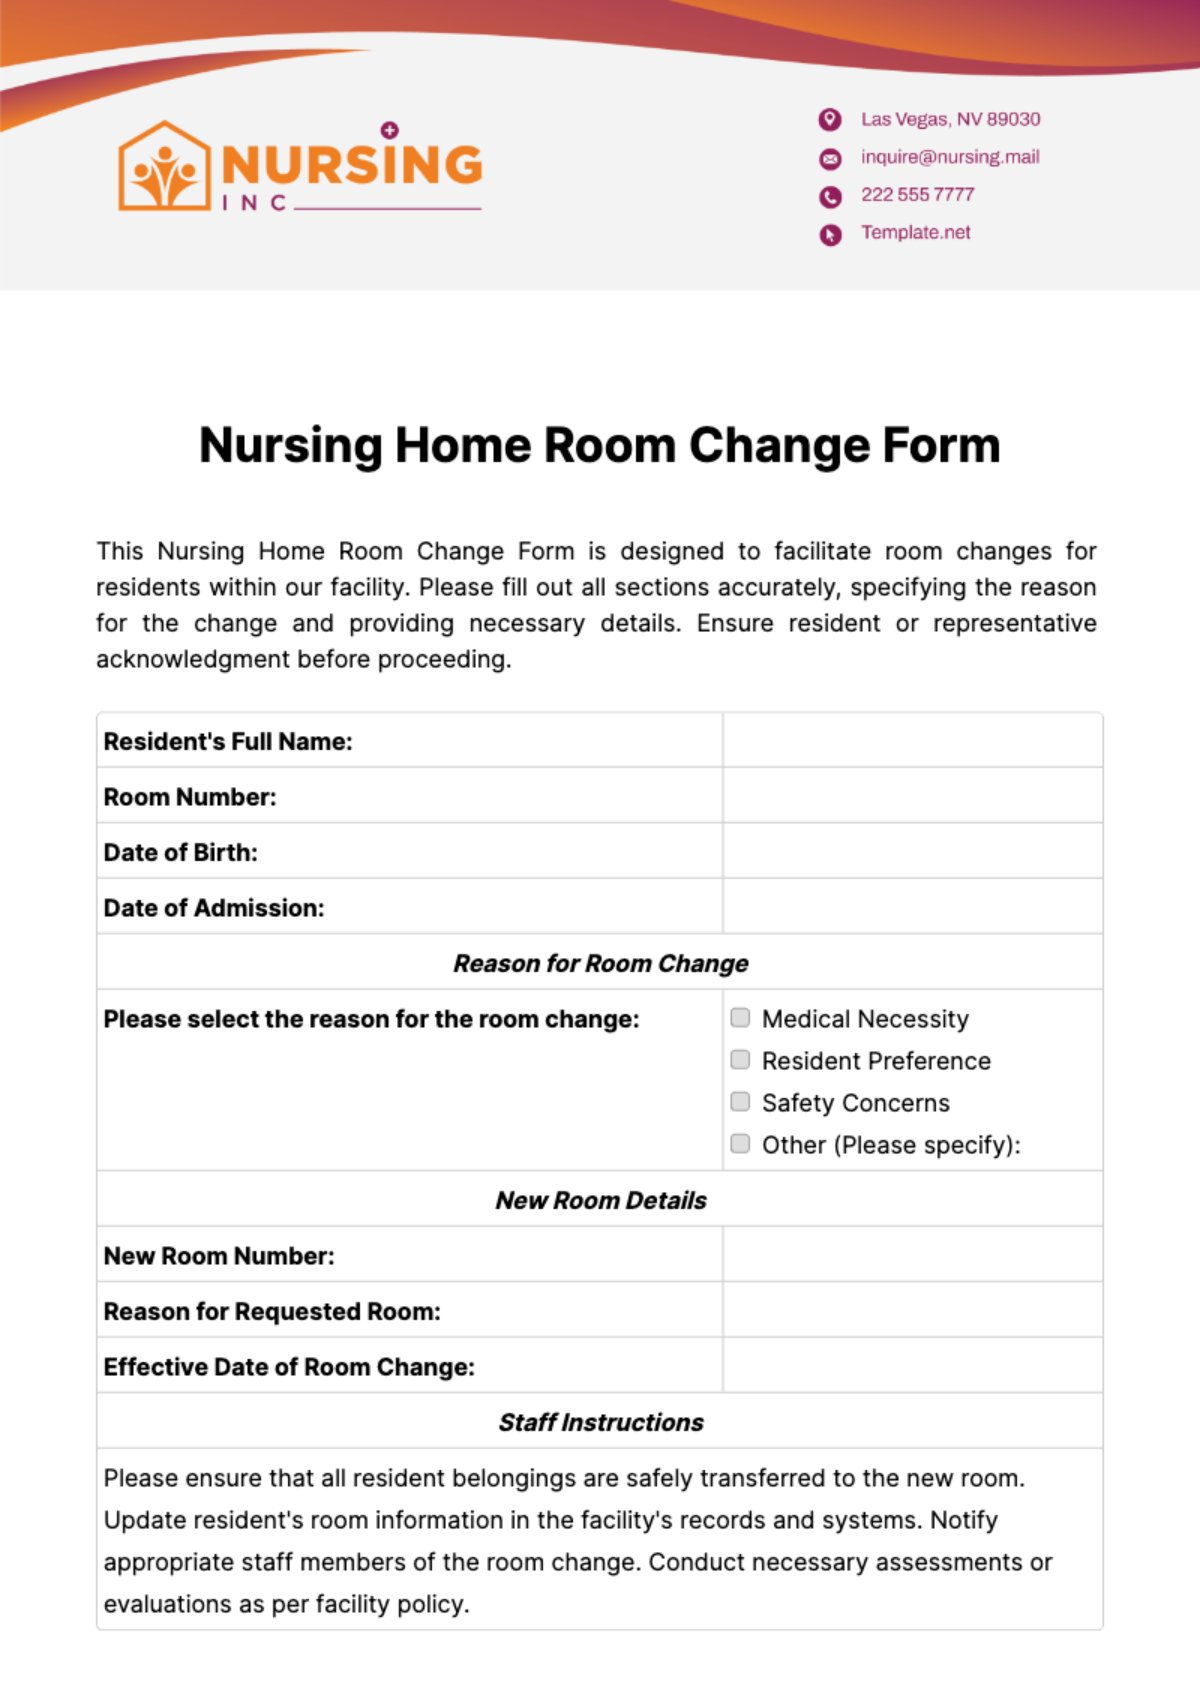 Nursing Home Room Change Form Template